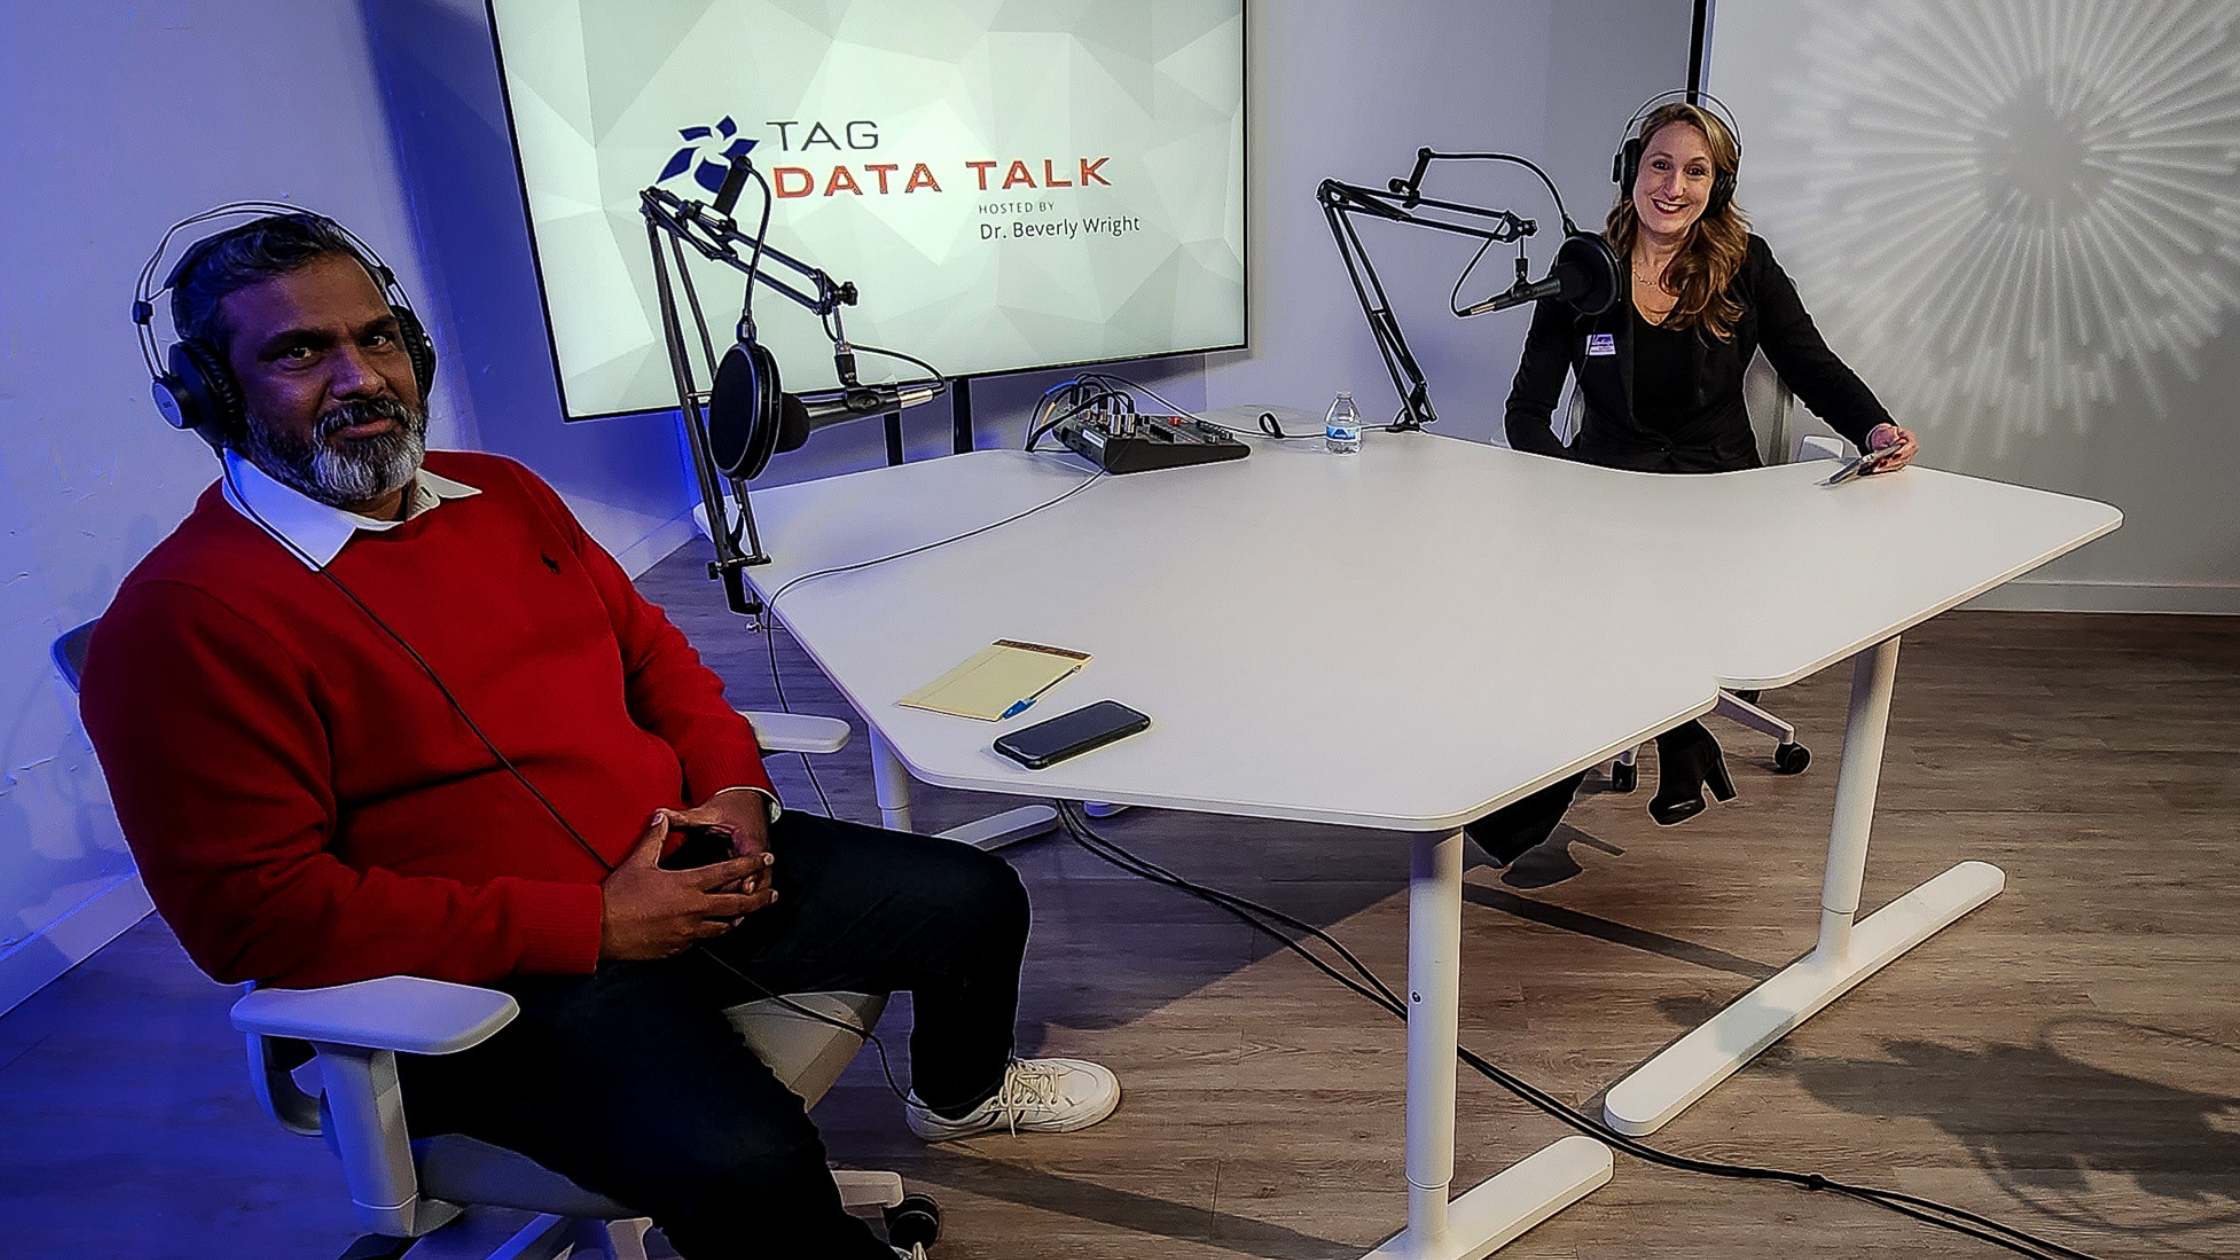 TAG Data Talk Podcast filmed at Valere Studios